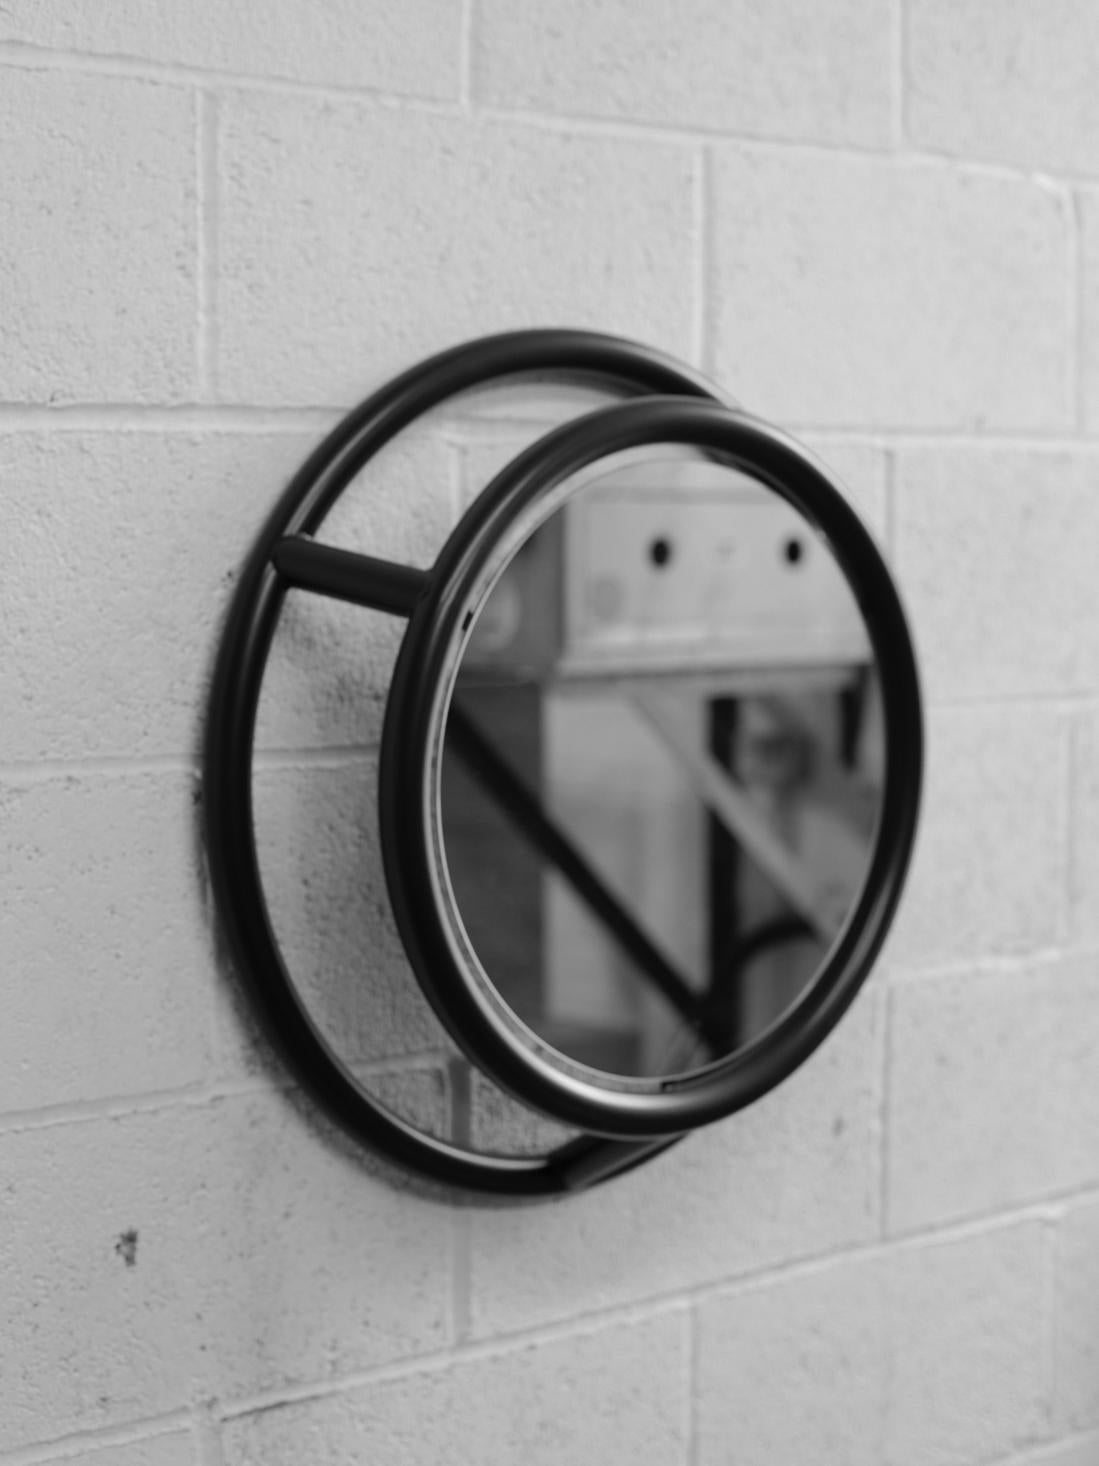 Miroir rond unique par Kim Thome
Dimensions : D 60 cm
Matériaux : Acier, miroir flottant

Kim Thomé est un designer norvégien basé à Londres.